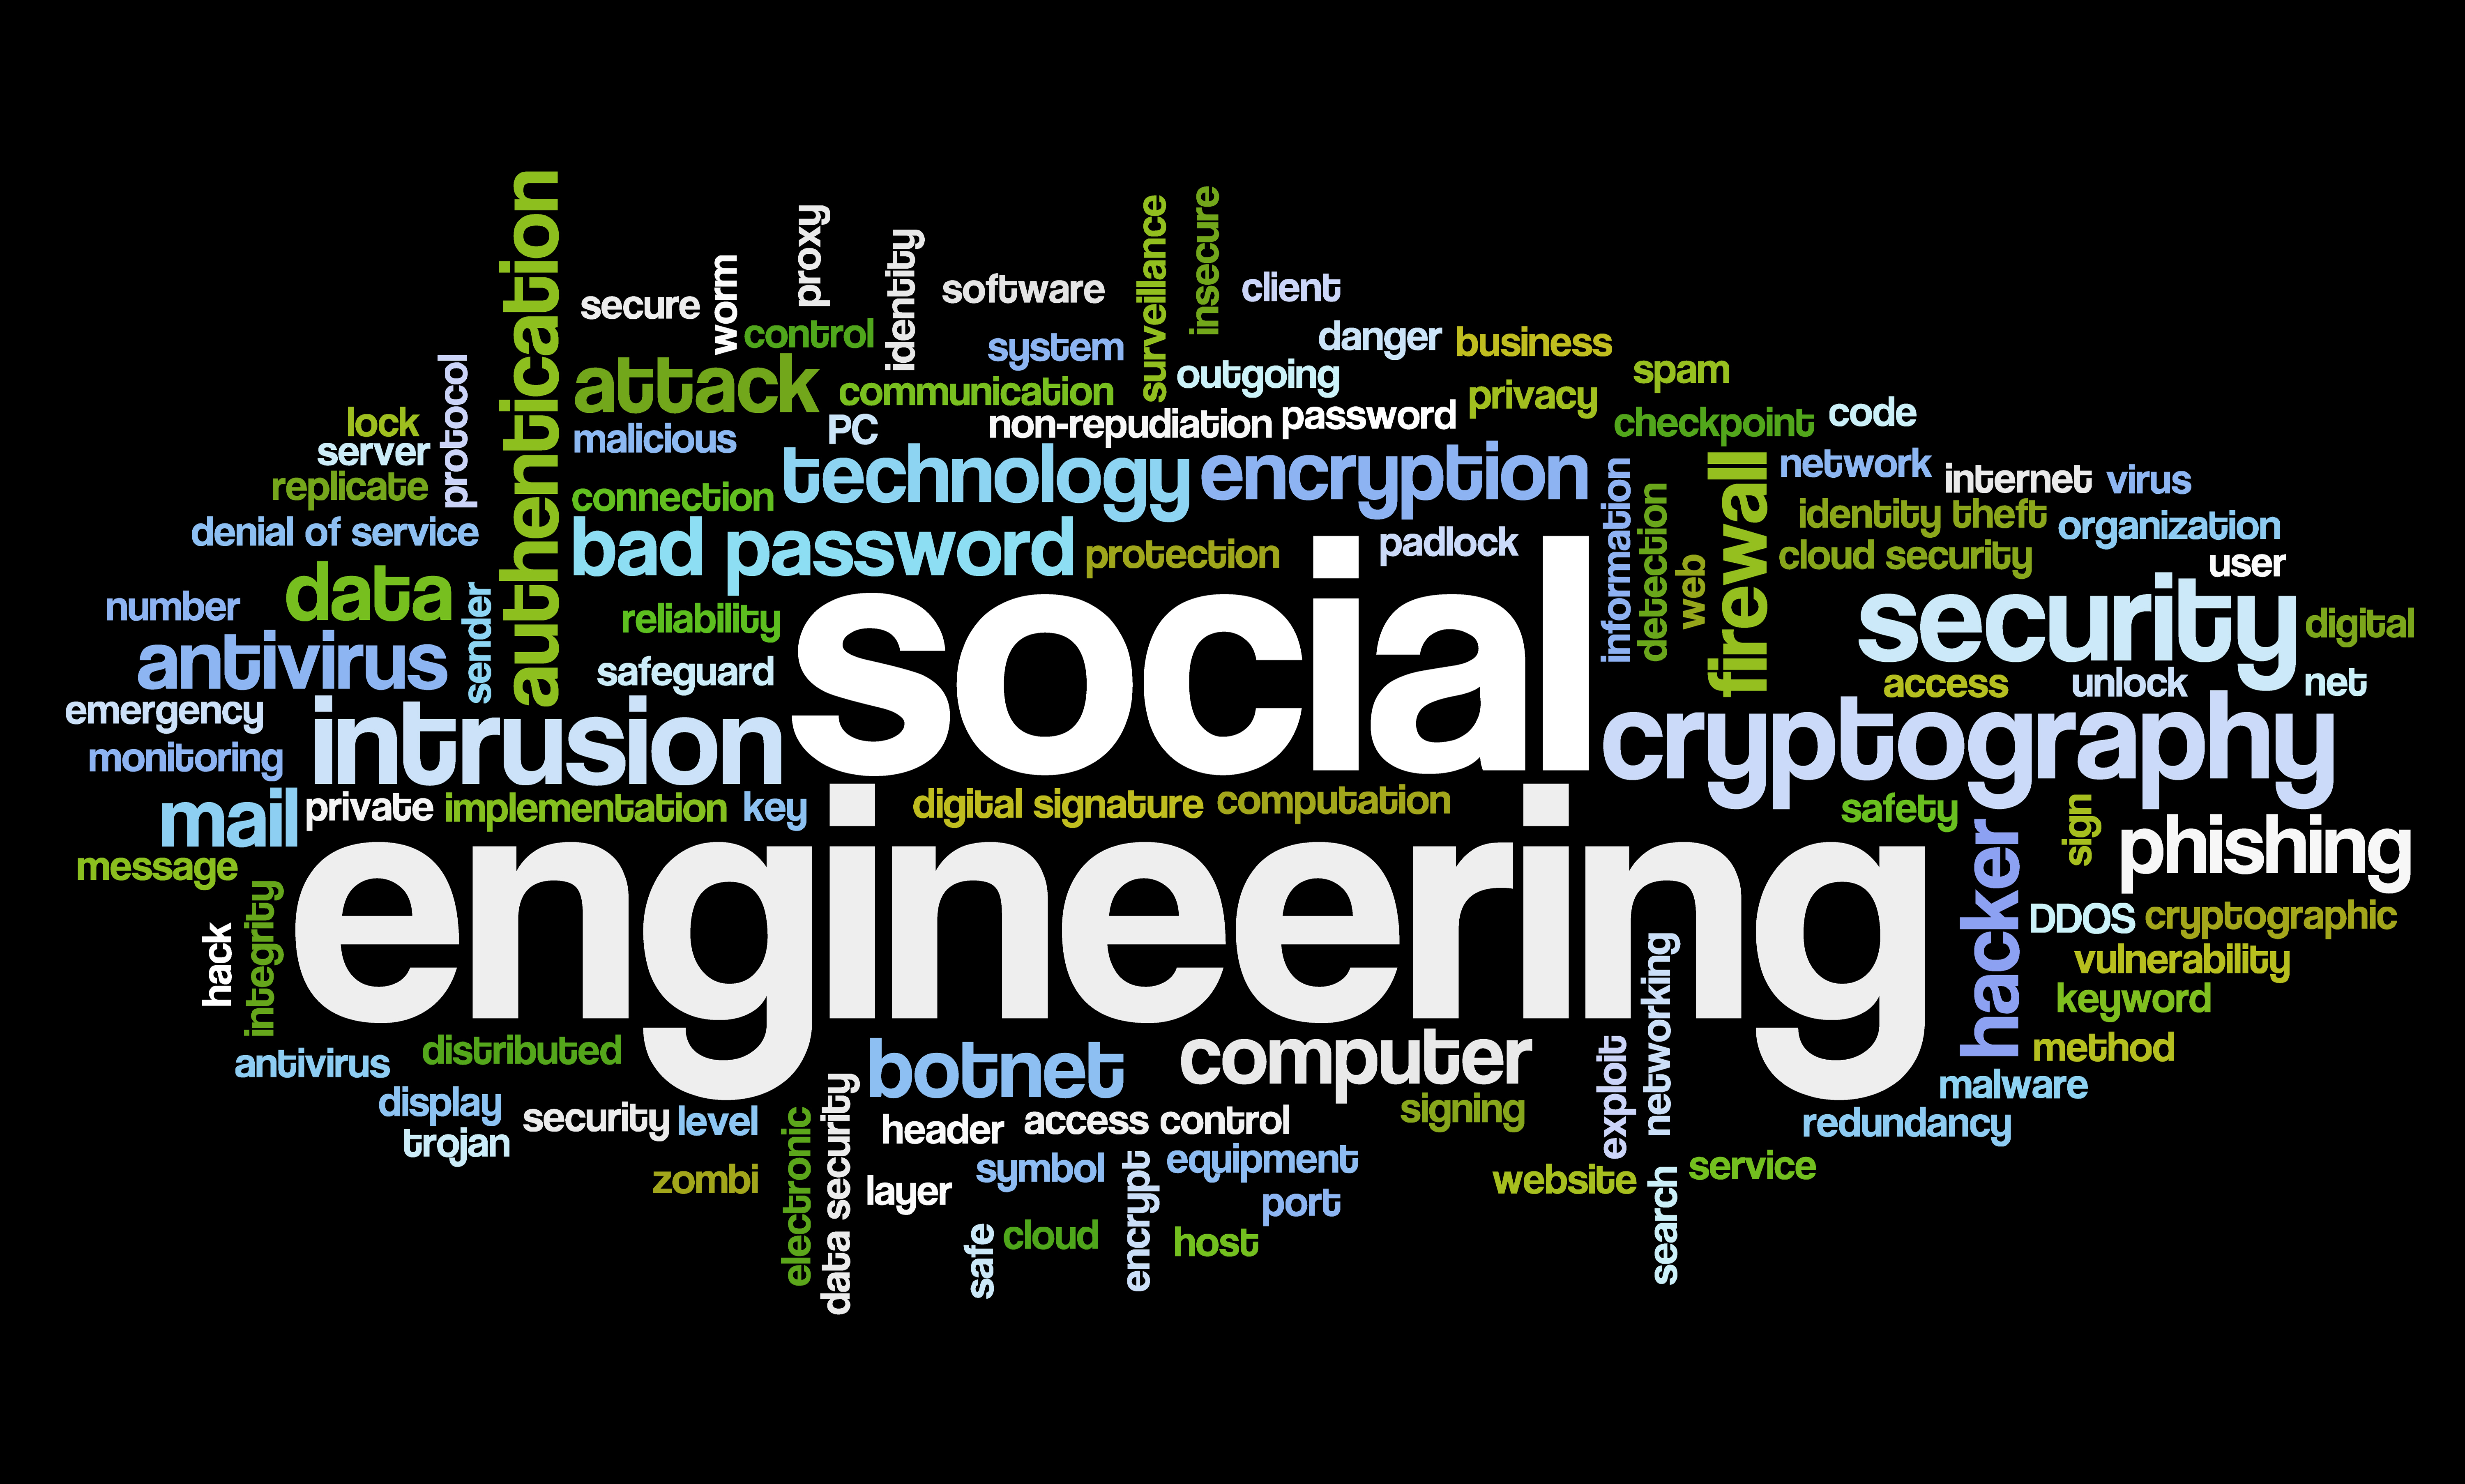 Method engineer. Социальная инженерия. Социальная инженерия (social Engineering). Методы социальной инженерии. Манипуляция социальная инженерия.